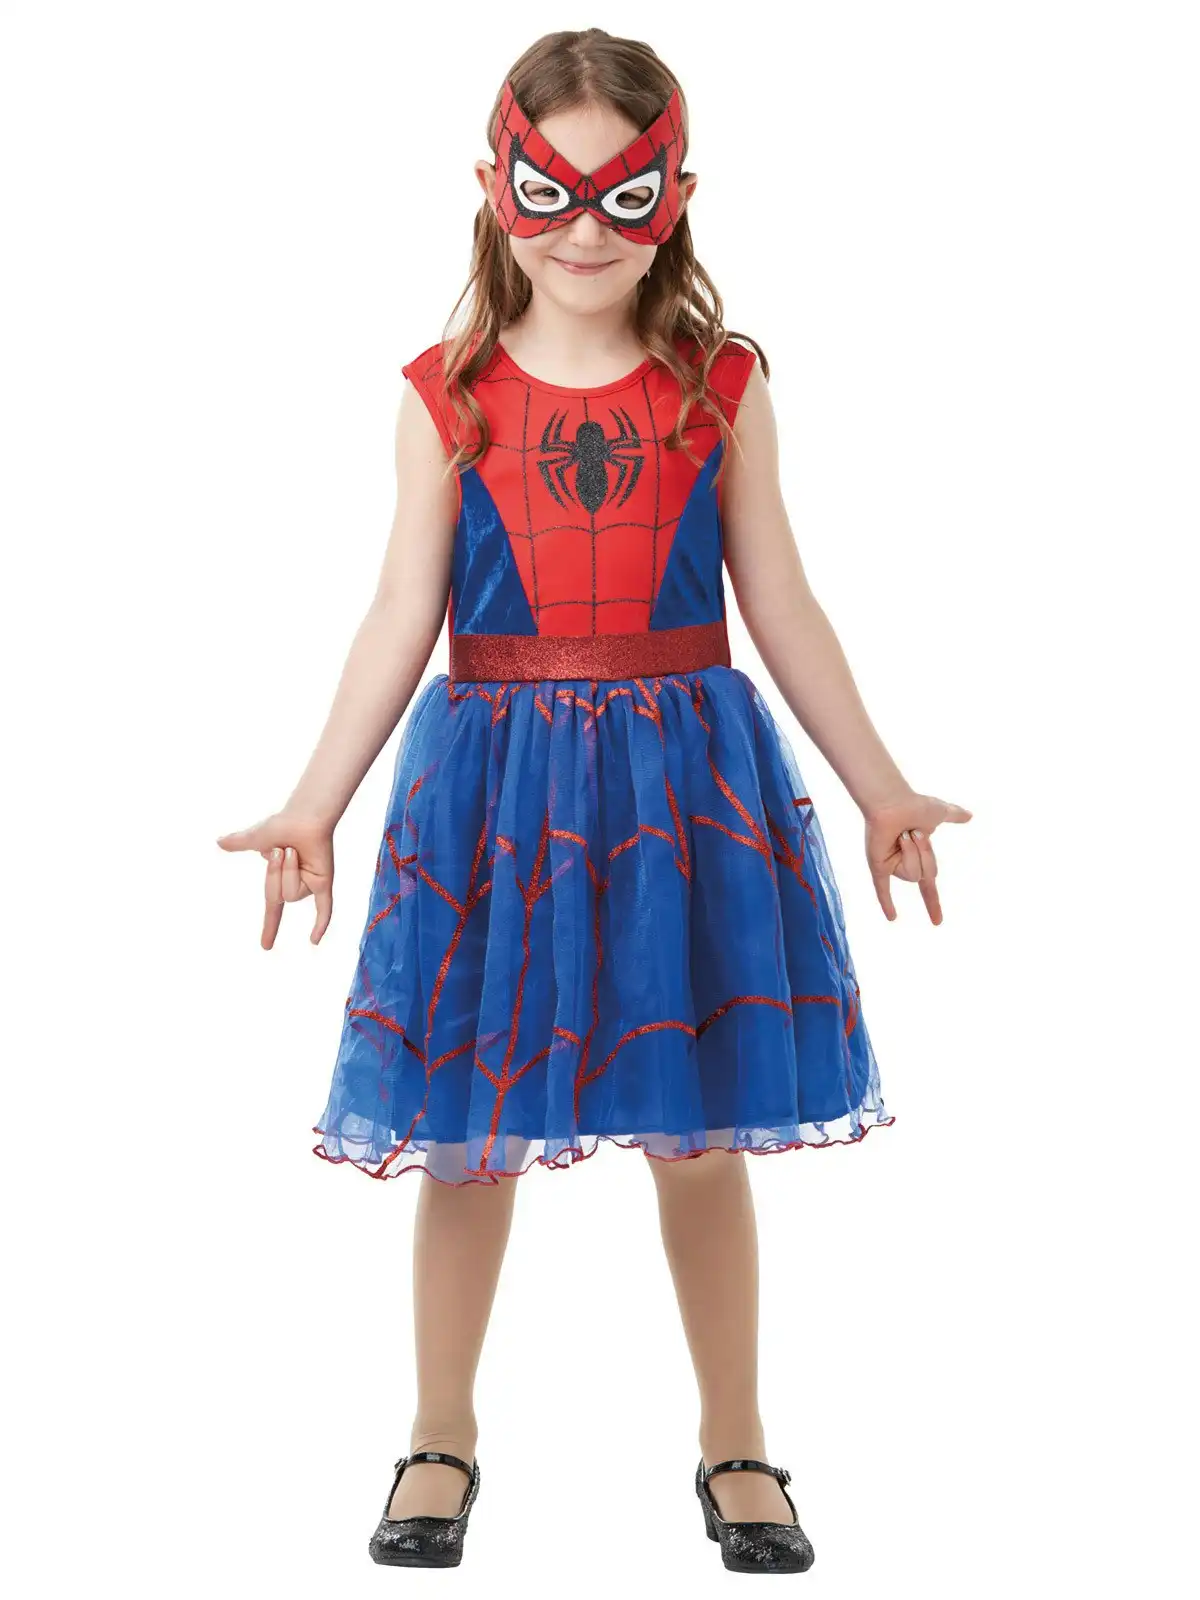 Marvel Spider Girl Deluxe Tutu Dress Up Costume Kids/Girls/Children Size 4-6